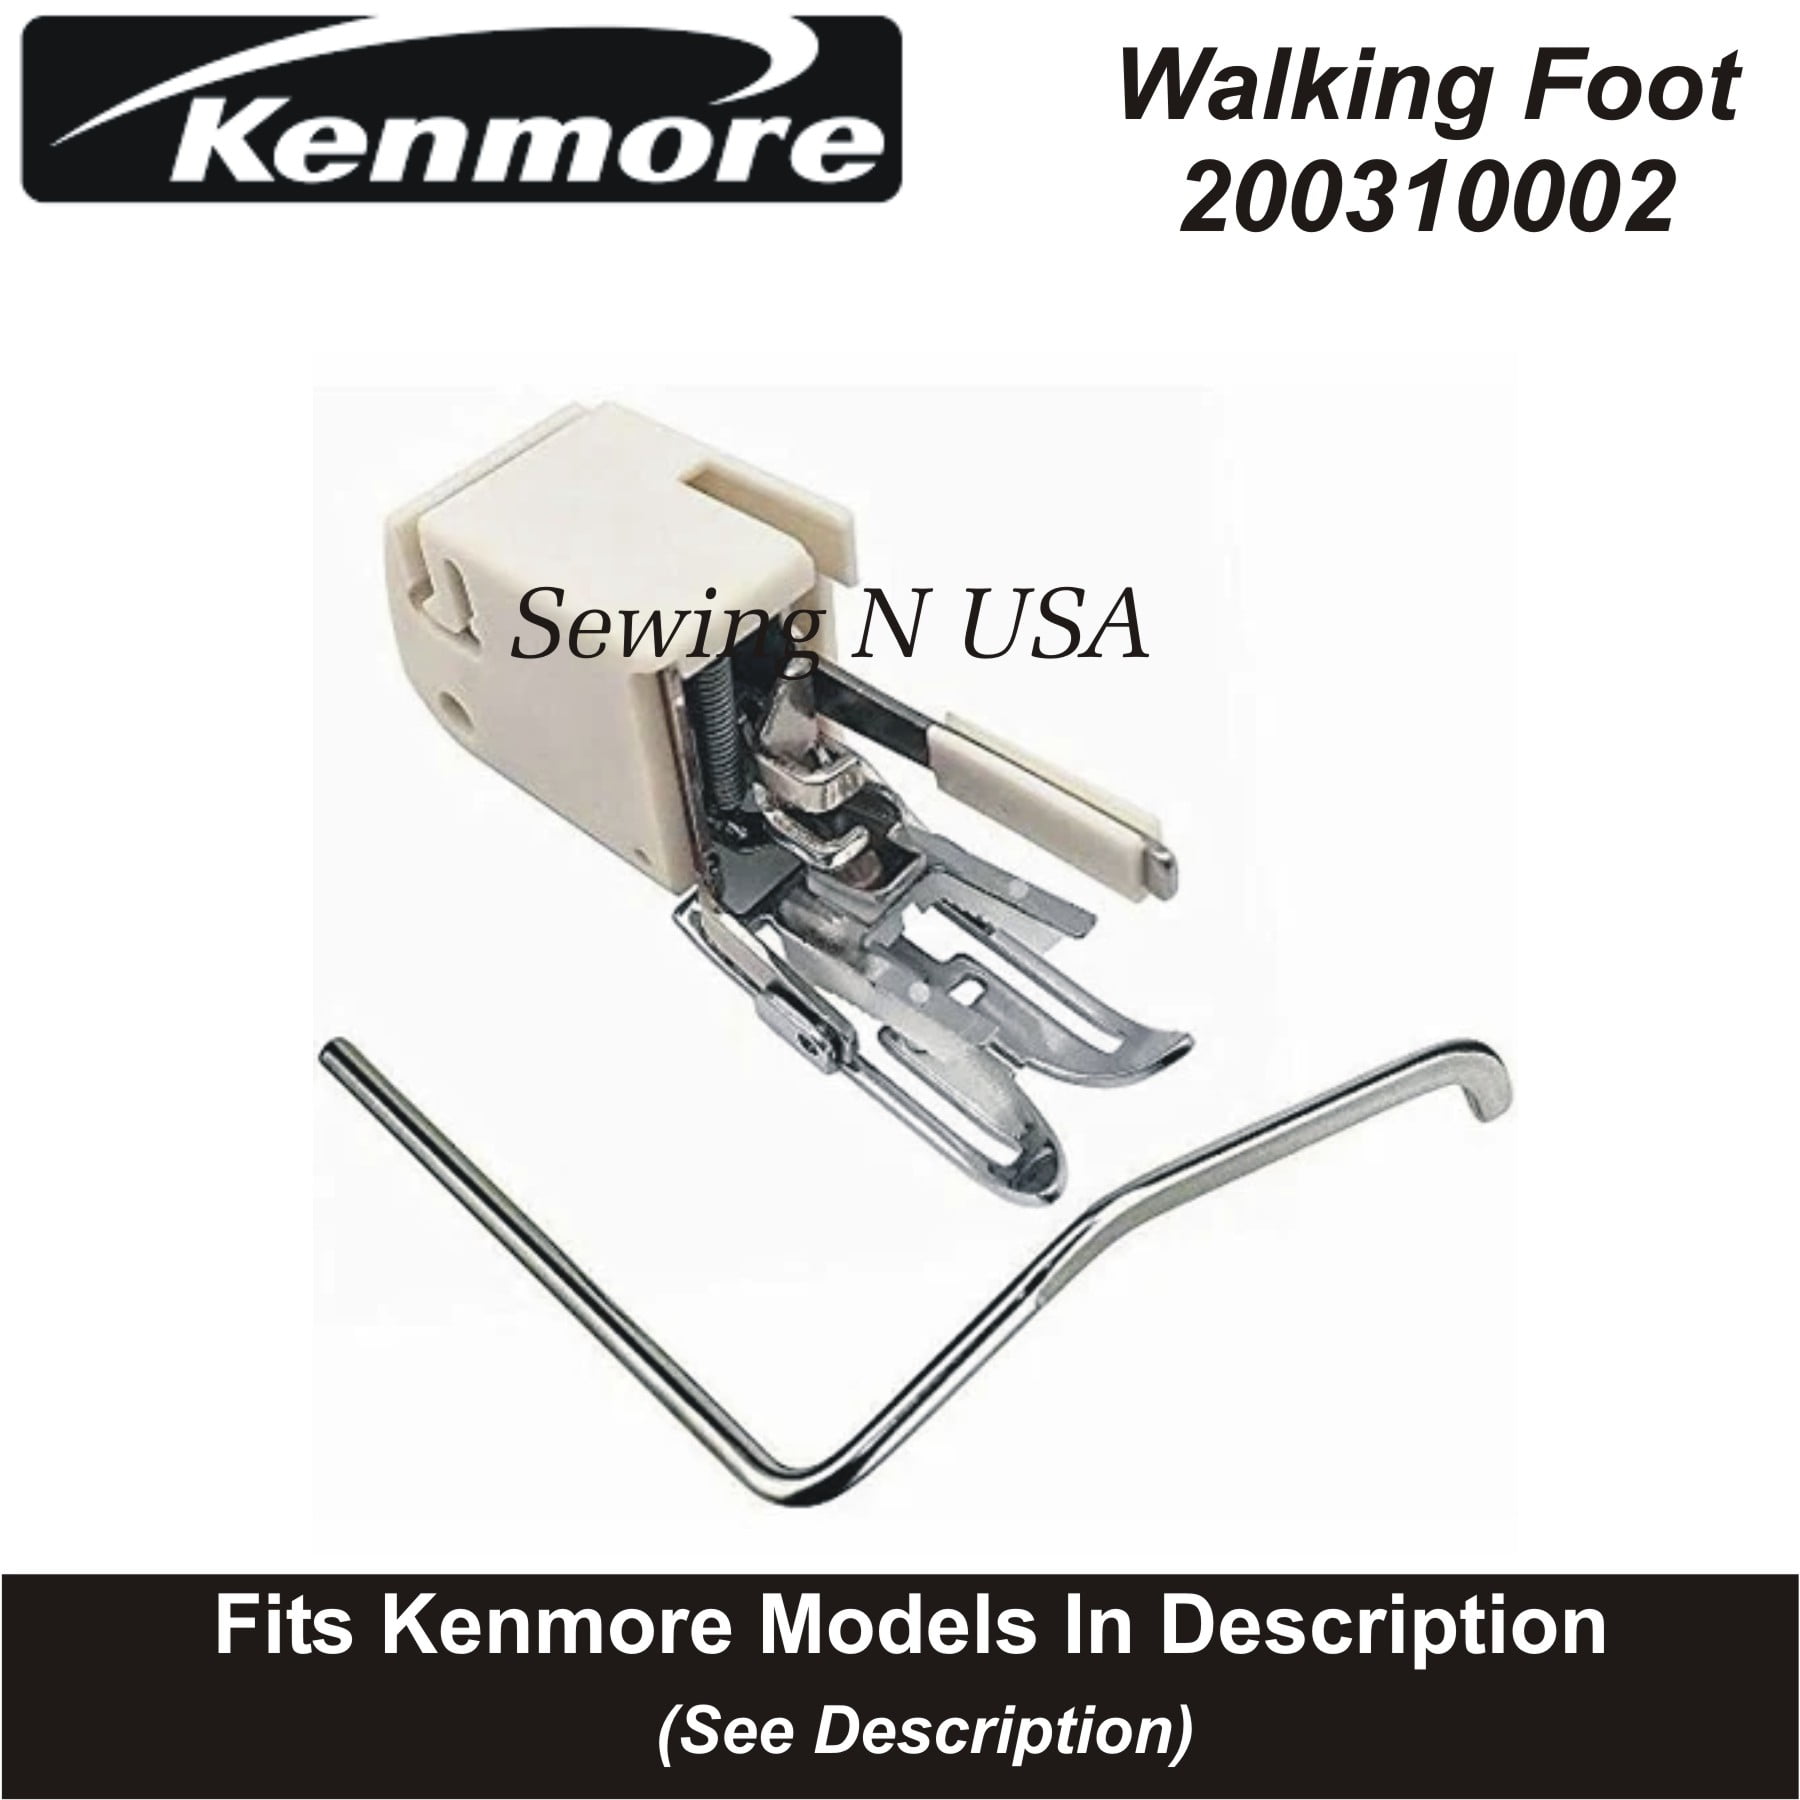 Nähmaschine Nähfüße Obertransportfüß 214872011 für Kenmore Janome Walking Foot 